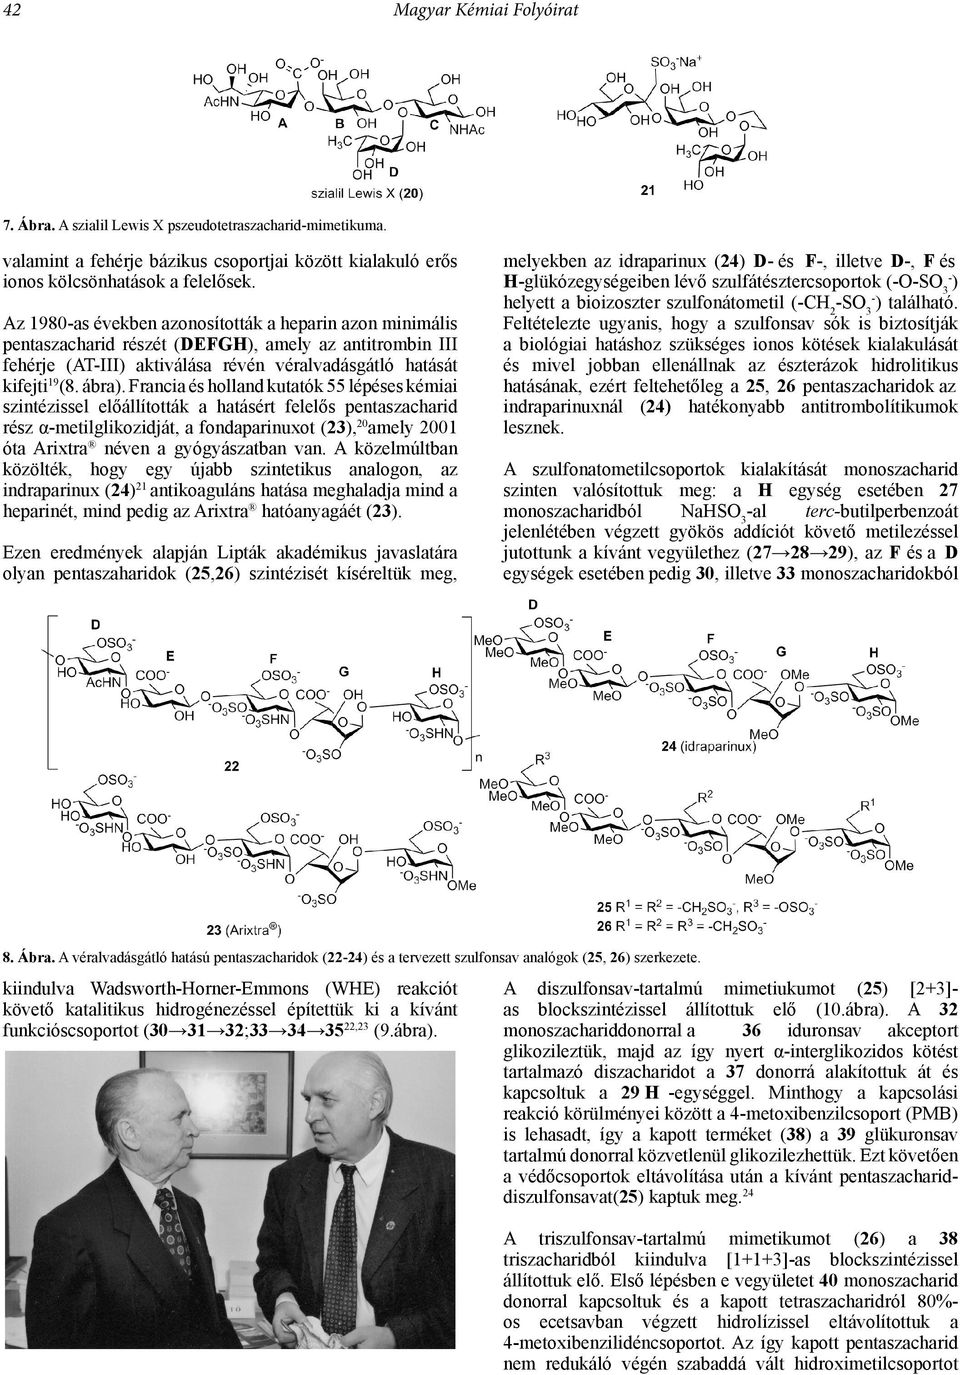 Francia és holland kutatók 55 lépéses kémiai szintézissel előállították a hatásért felelős pentaszacharid rész α-metilglikozidját, a fondaparinuxot (23), 20 amely 2001 óta Arixtra néven a